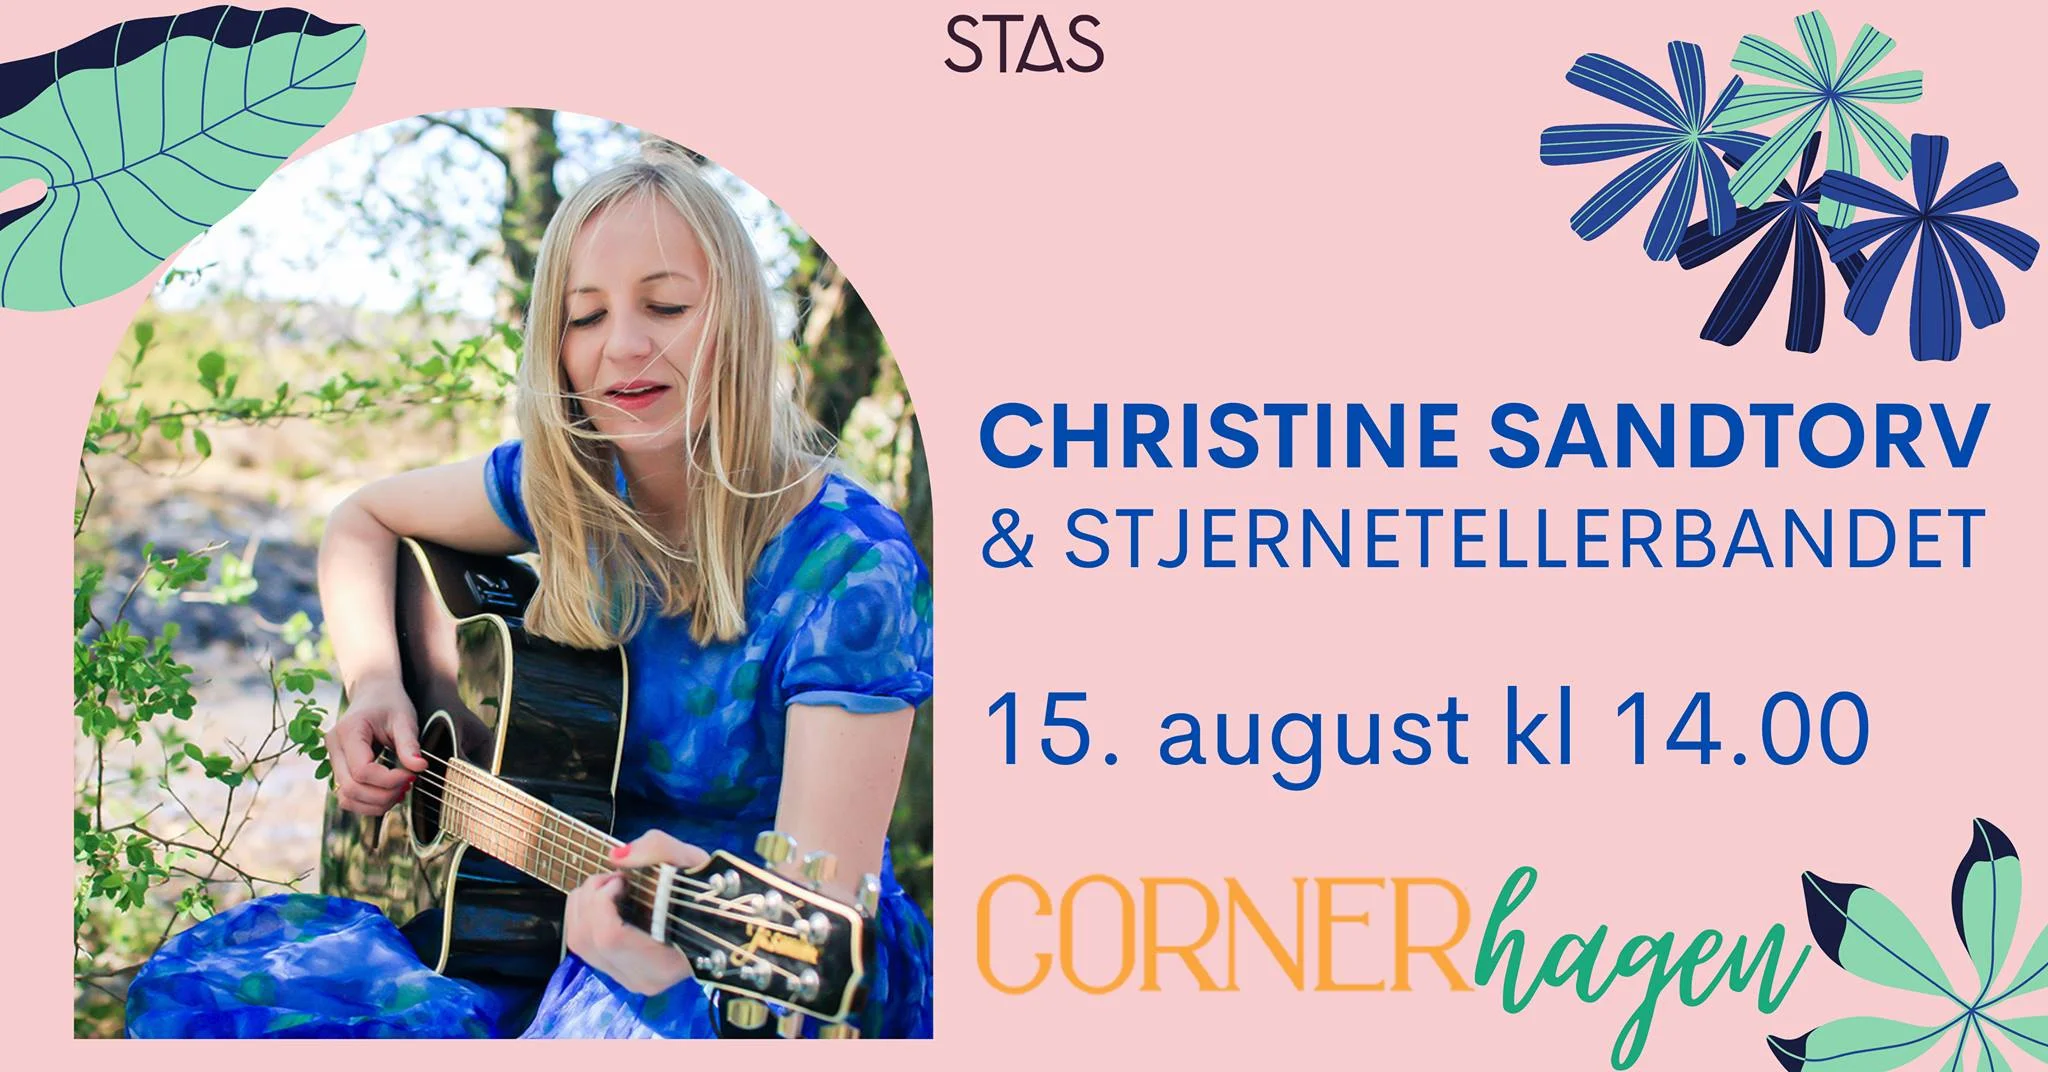 Christine Sandtorv og Stjernetellerbandet i Cornerhagen  - Stas Artist 